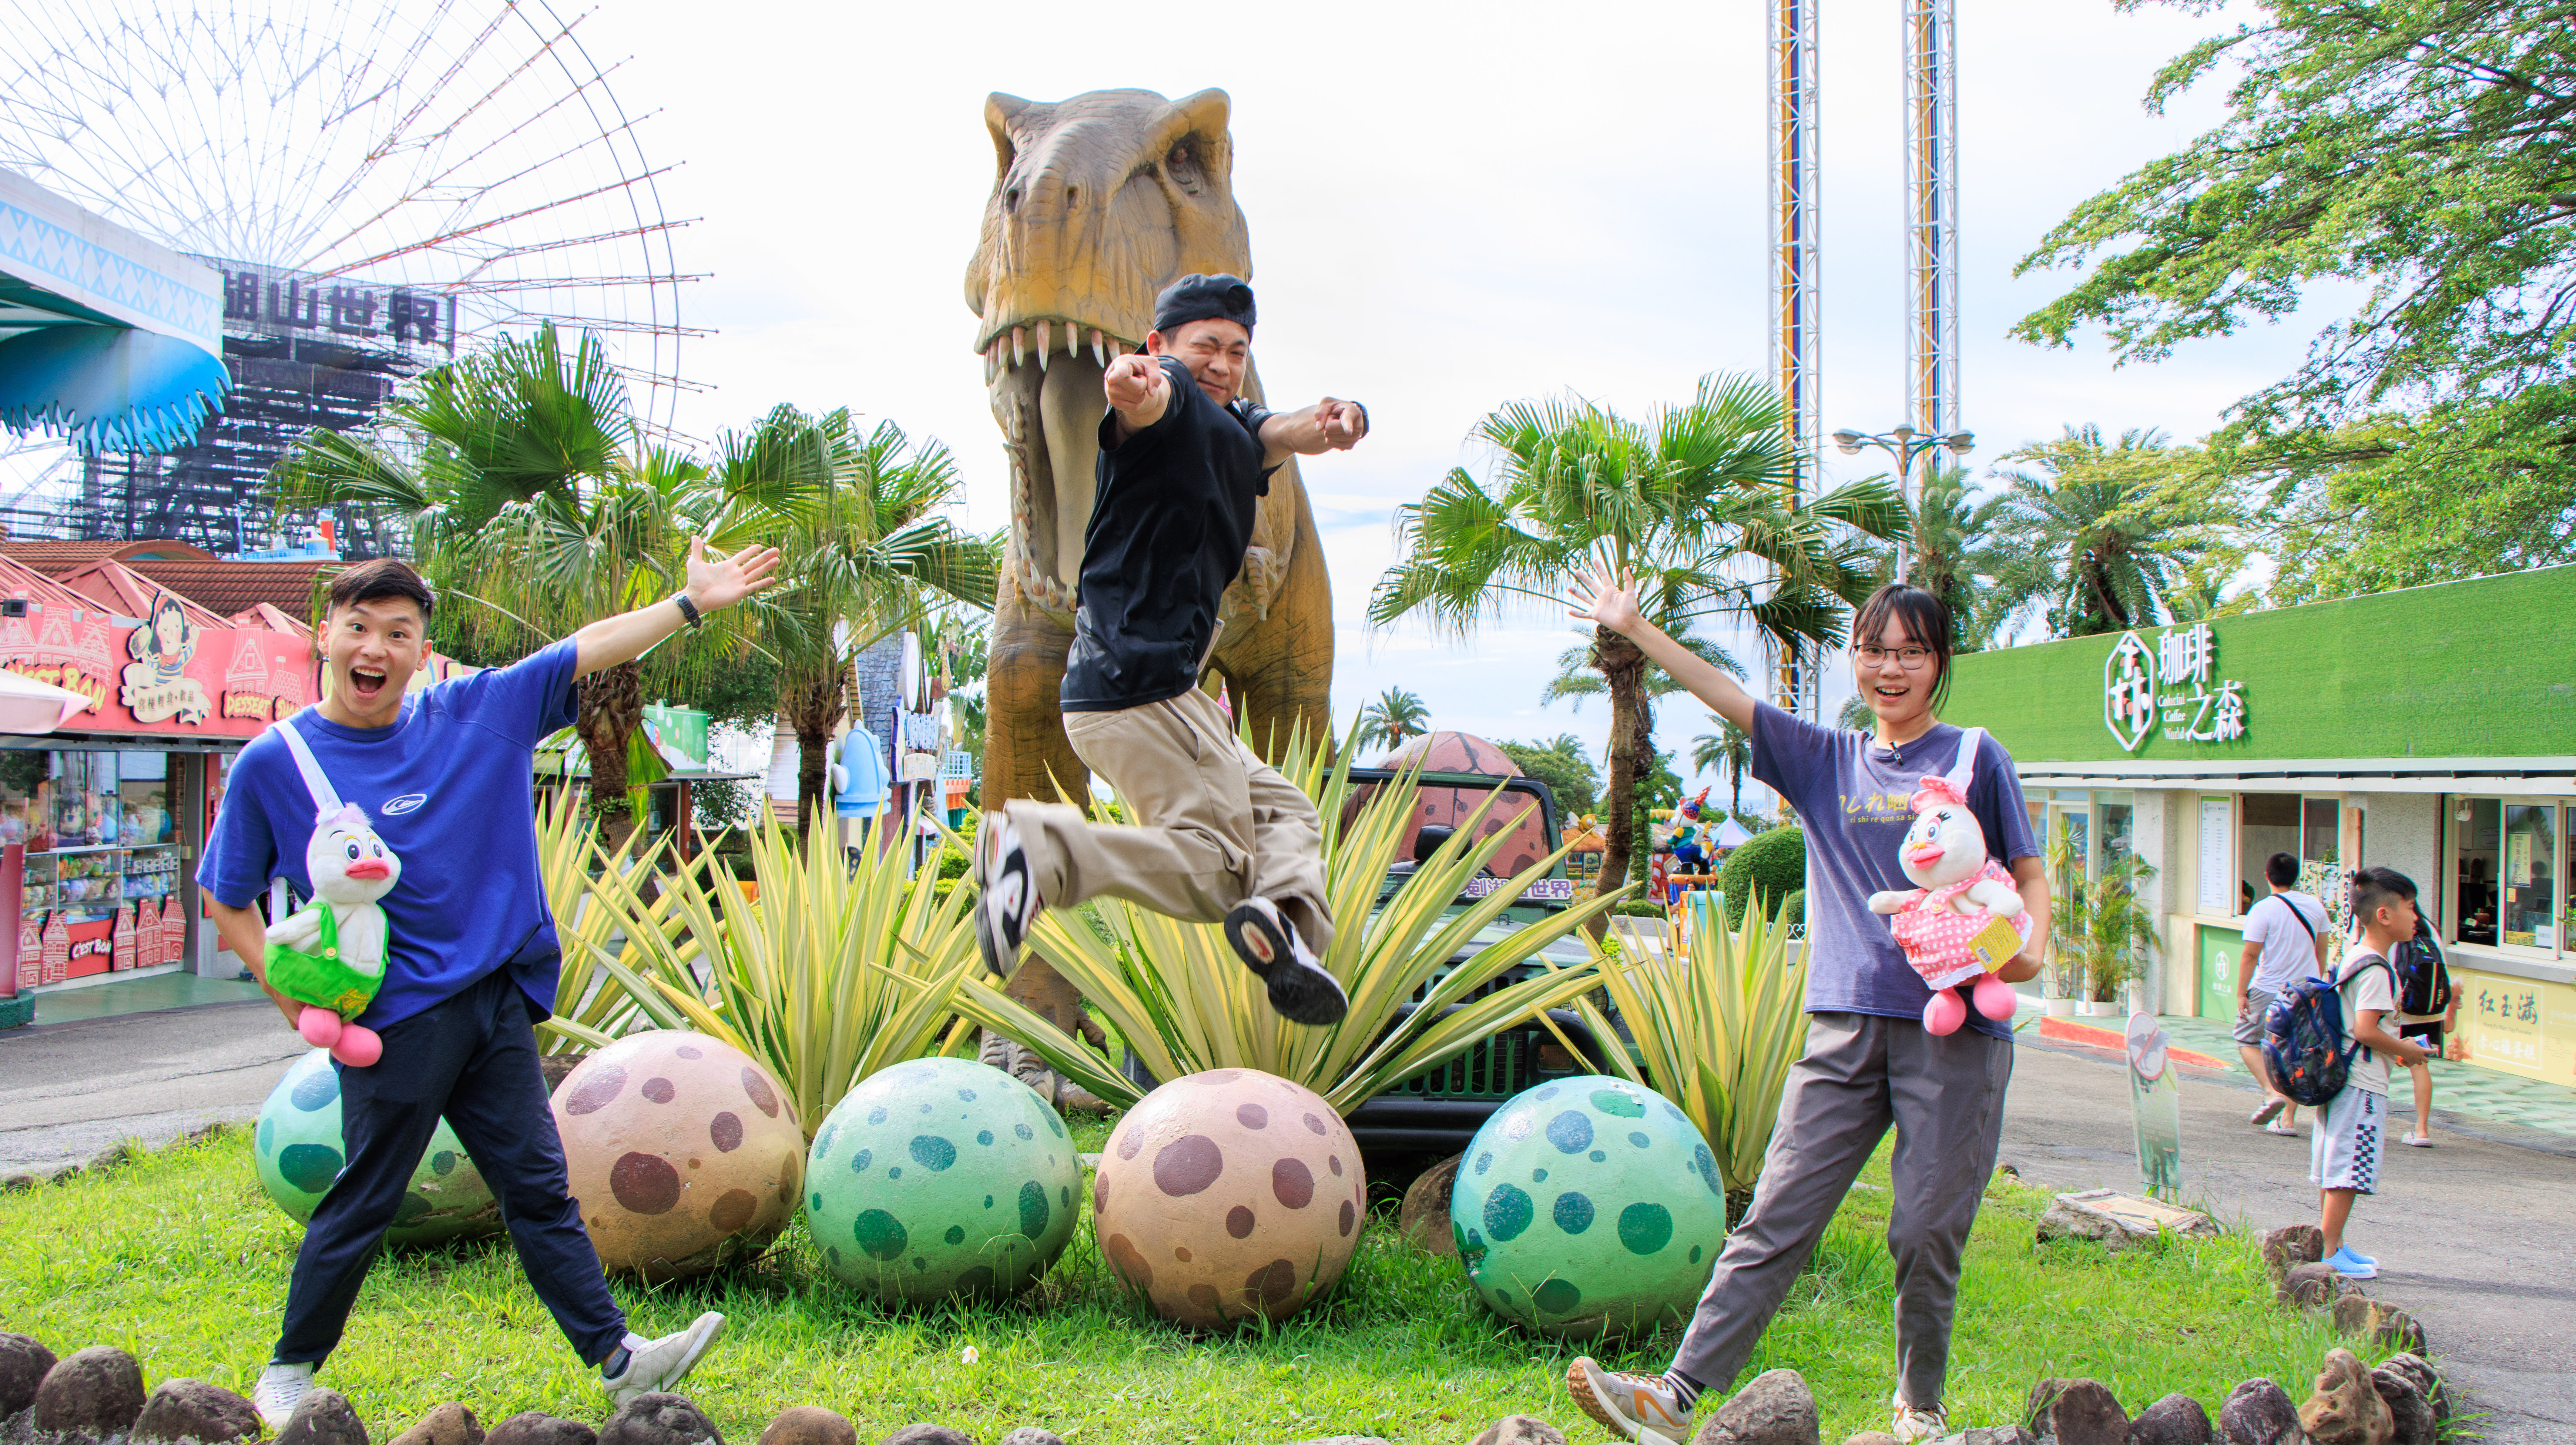 FUN暑假啰，最受大小朋友青睐的「恐龙见面会」将在儿童玩国欢乐金银岛舞台以及飞越恐龙谷广场与民众来场正面对决。业者提供